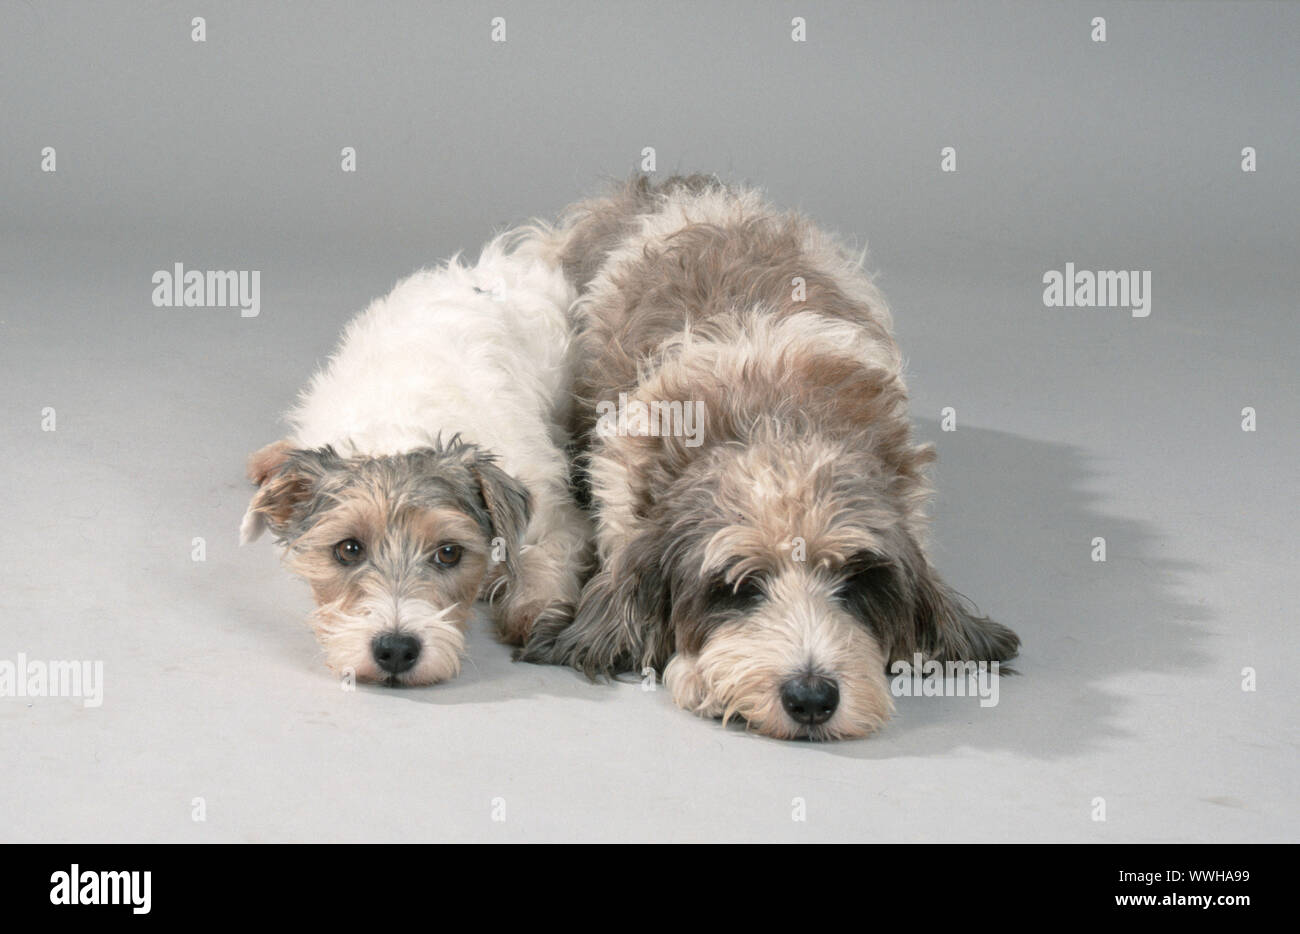 Parson Jack Russell Terrier / Petit Basset Griffon Vendeen Stock Photo